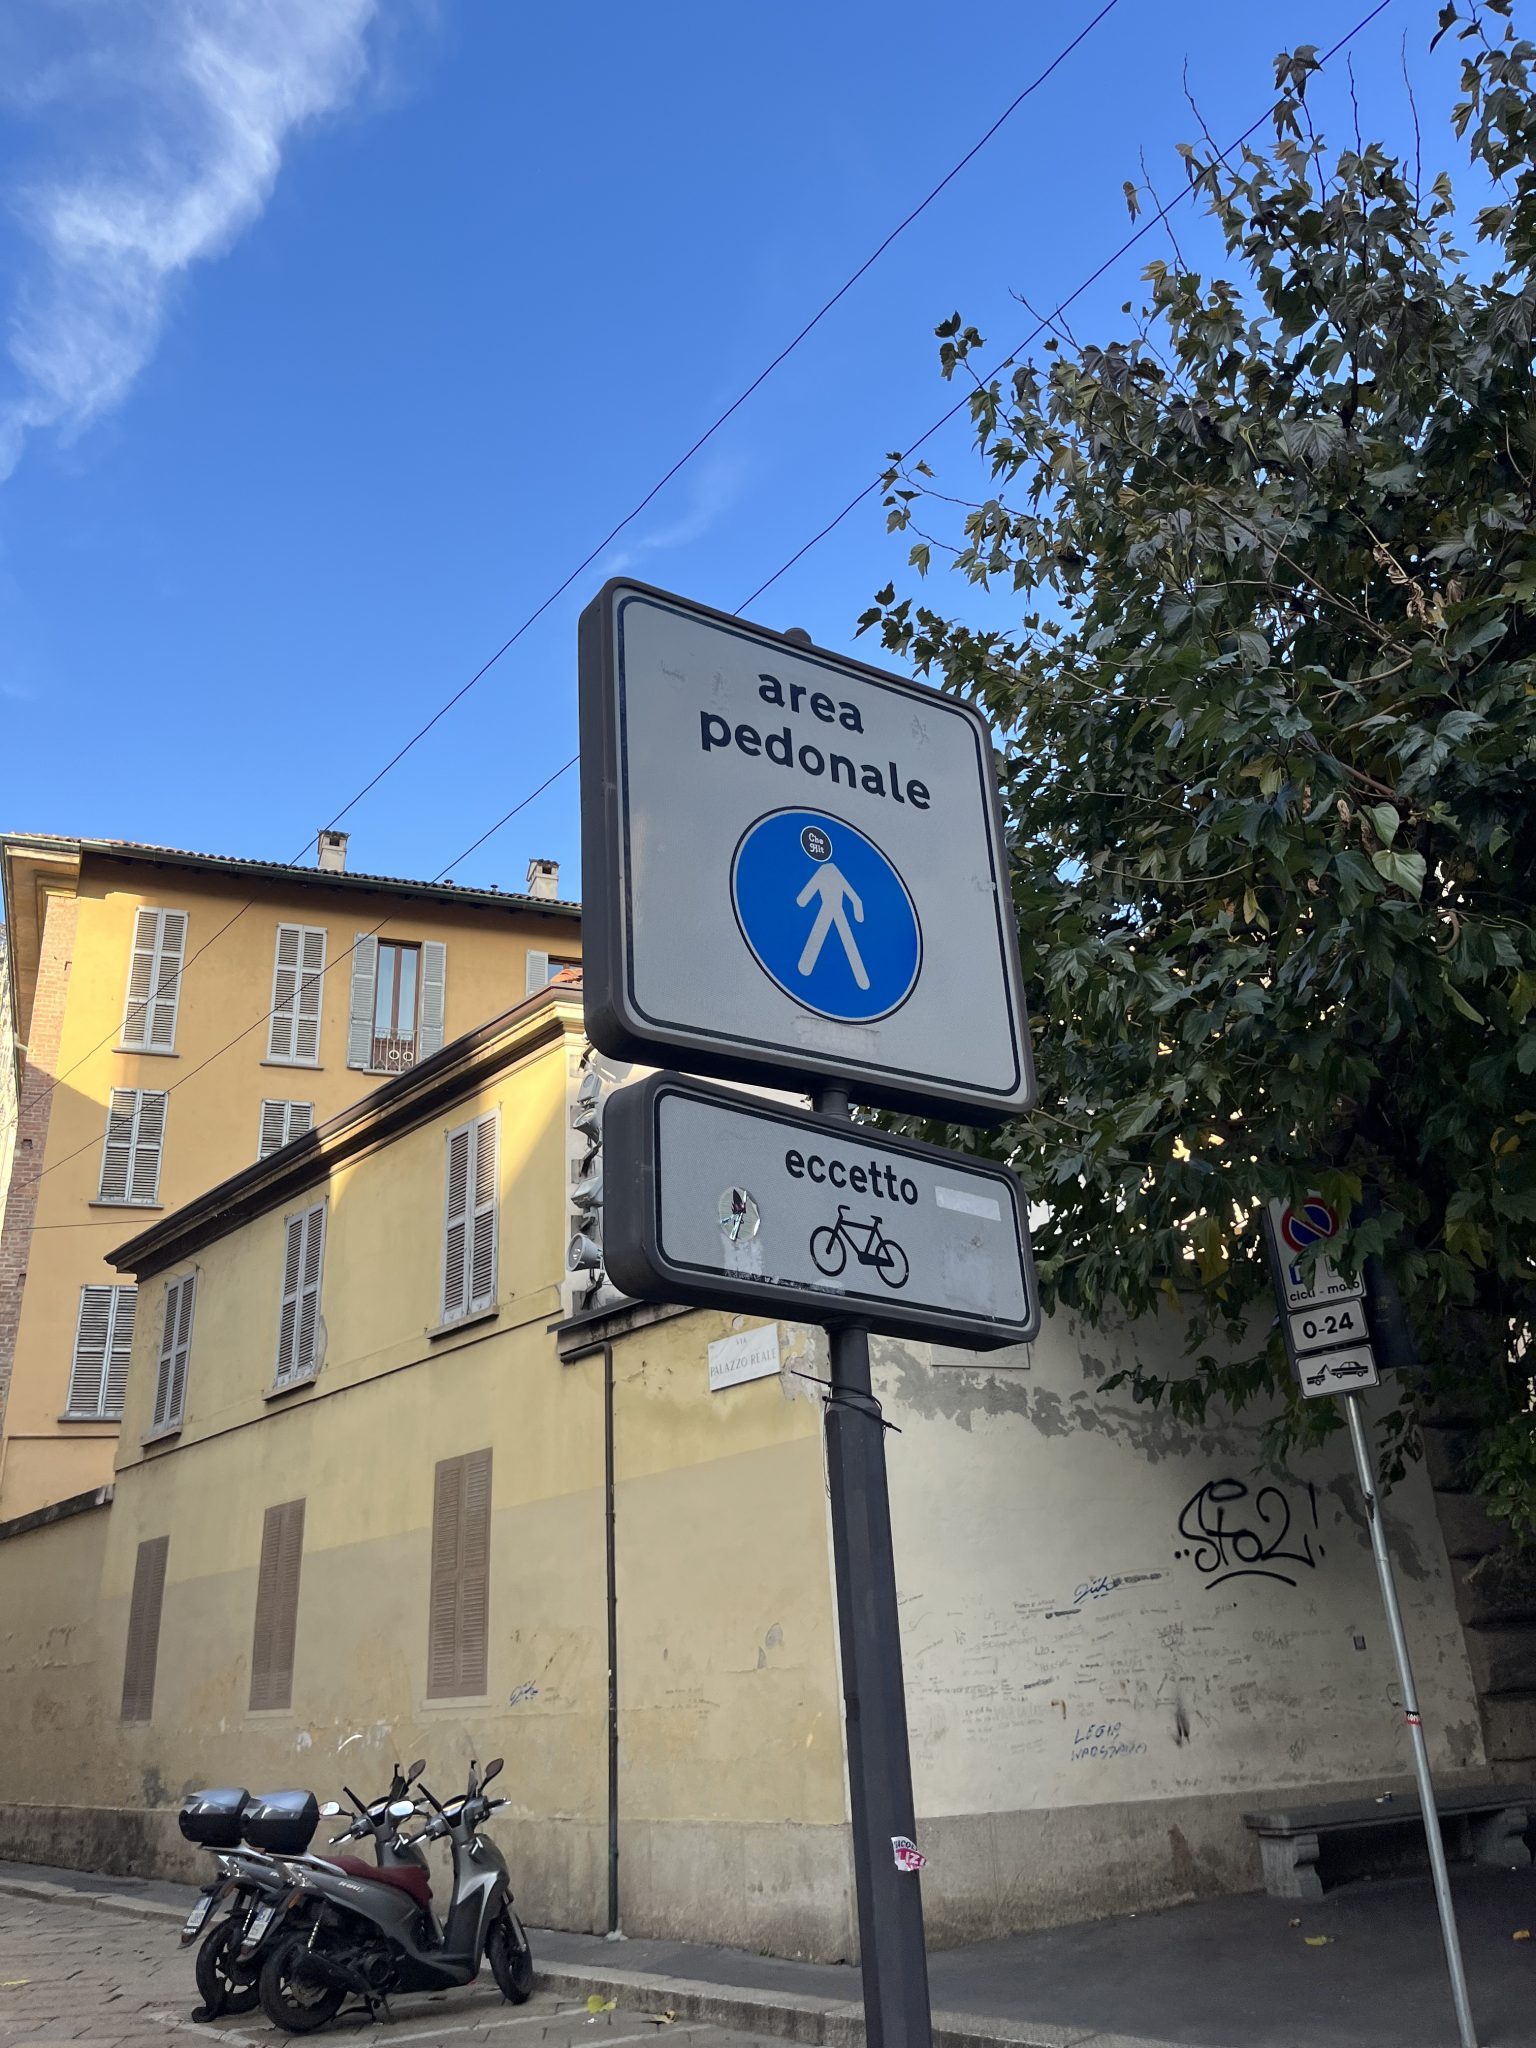 People walking sign, Milan, Italy